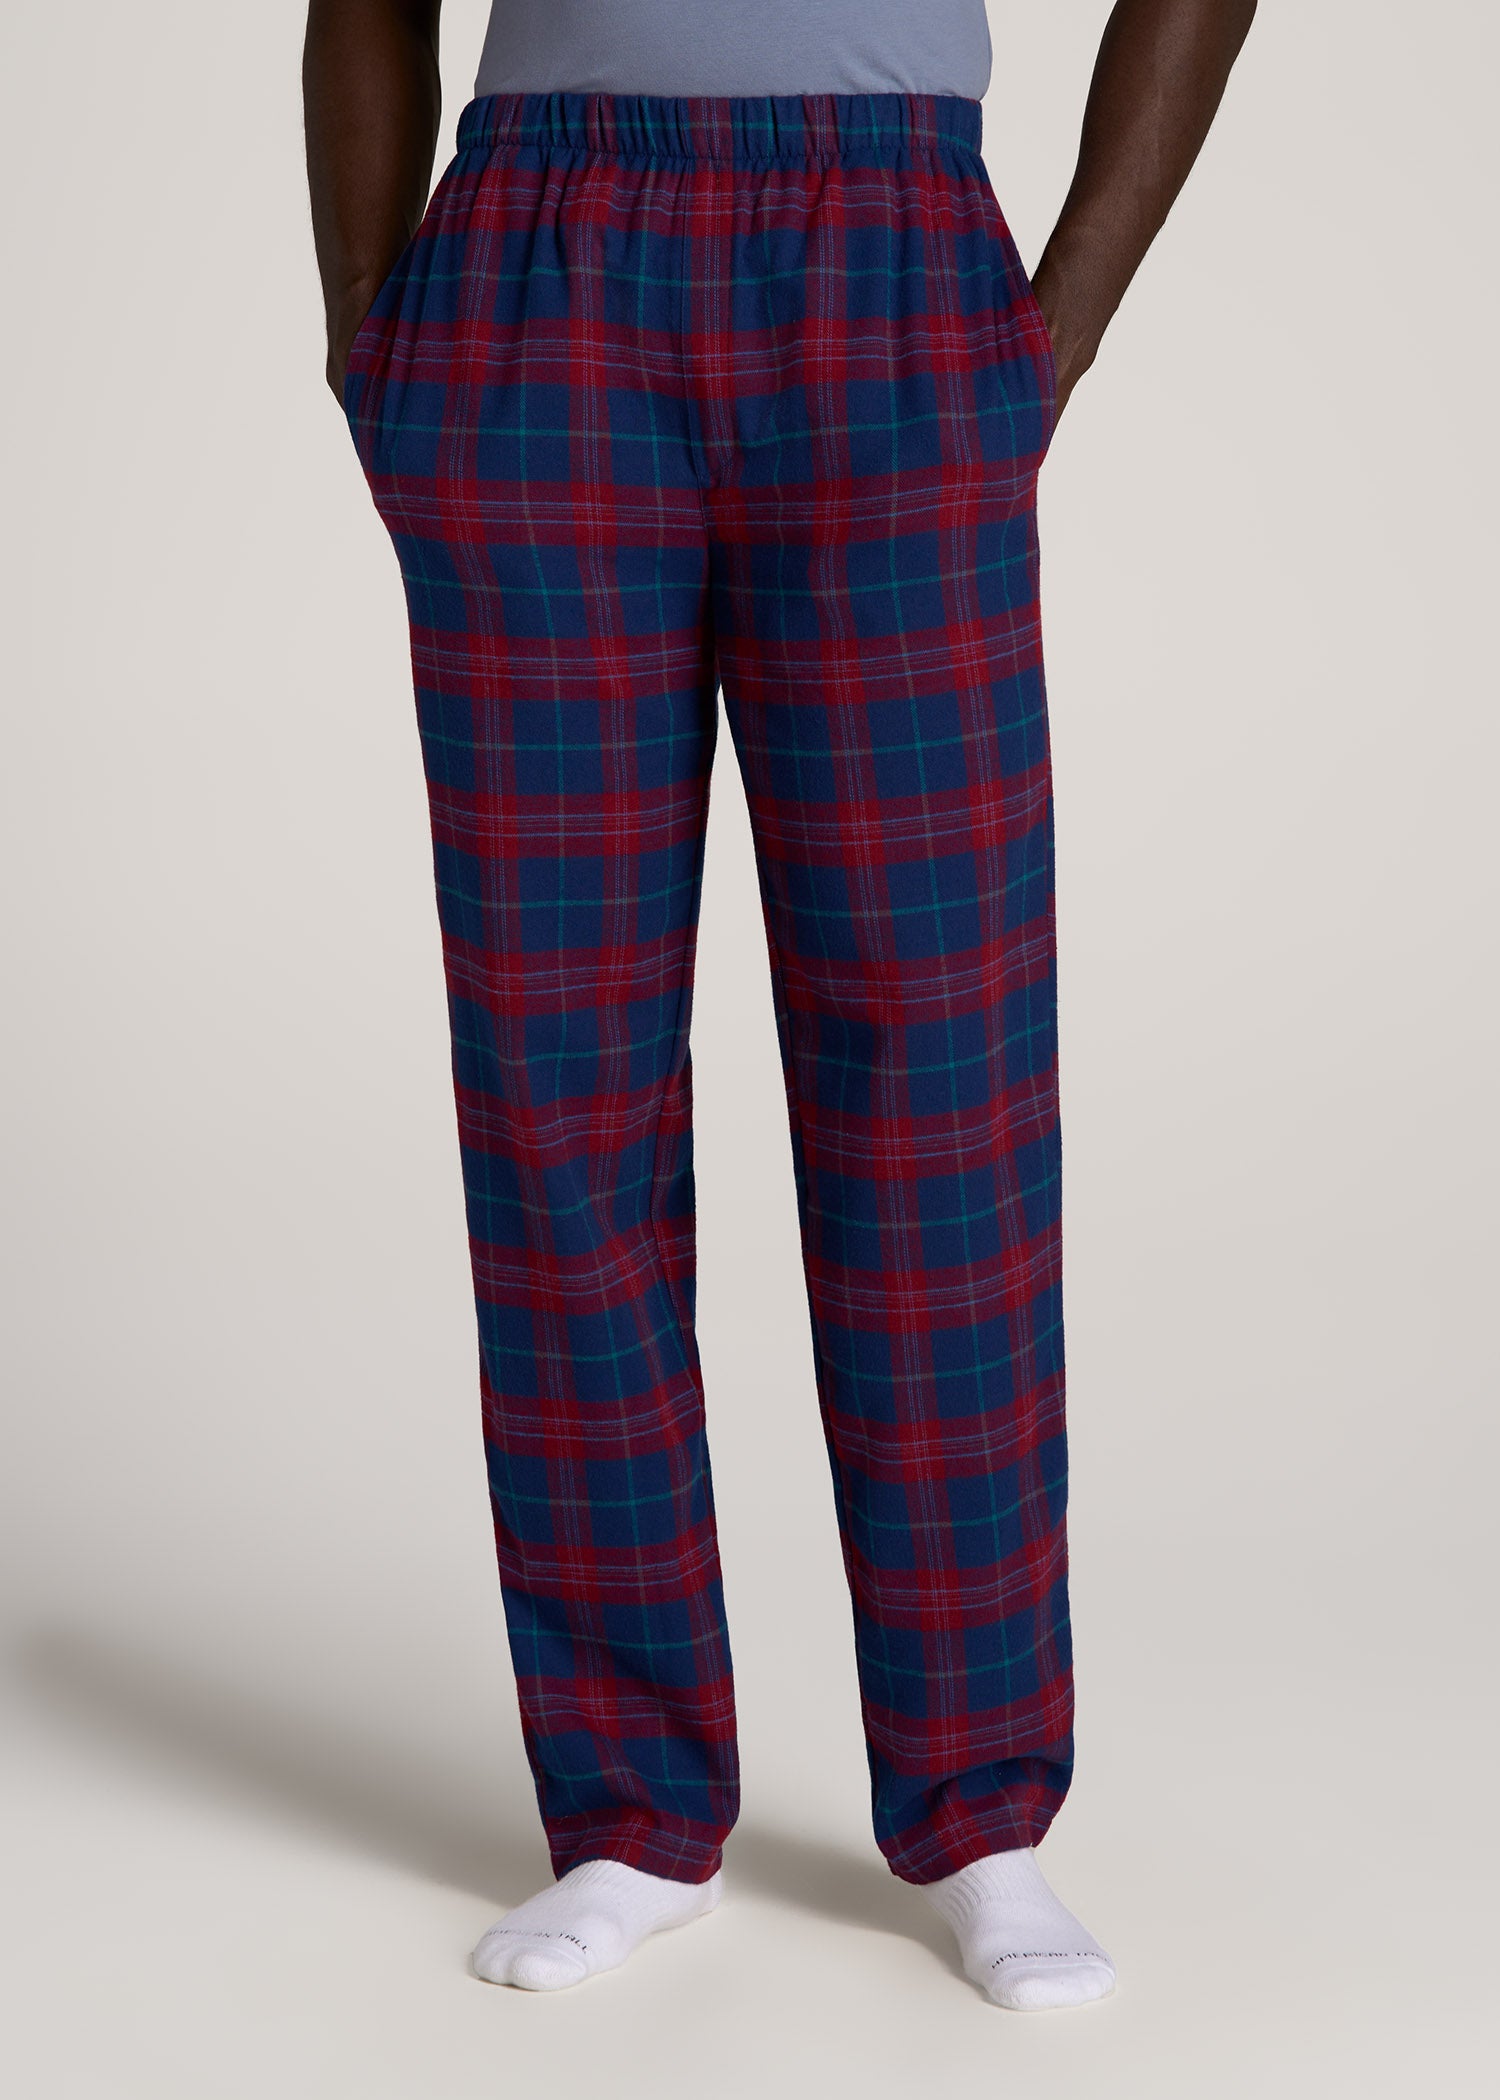 http://americantall.com/cdn/shop/files/American-Tall-Men-Flannel-Pajamas-Blue-Red-Tartan-front.jpg?v=1694009607